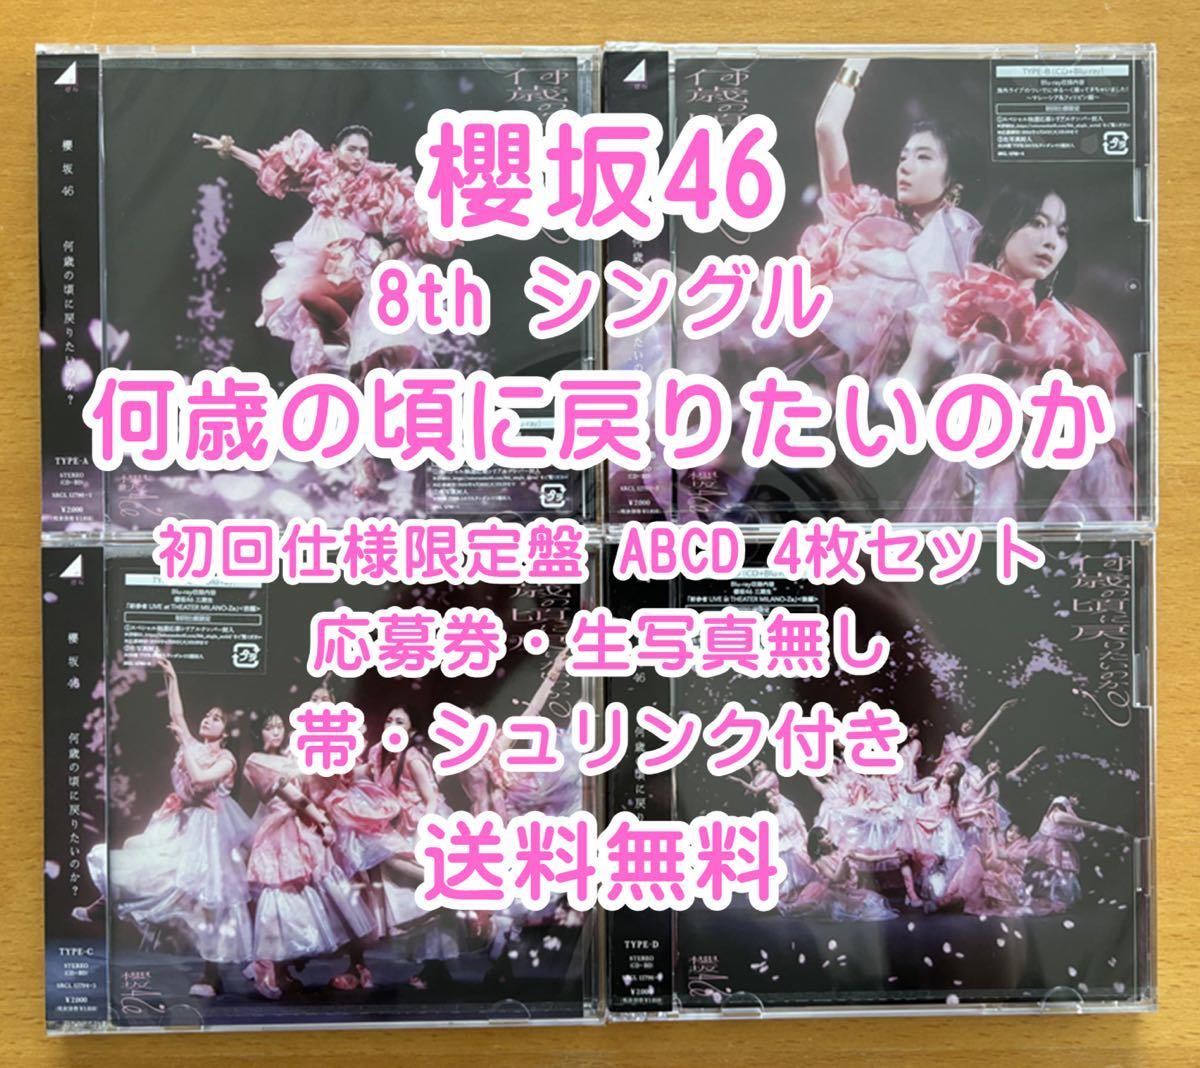 ◆ 櫻坂46 8th 何歳の頃に戻りたいのか 初回限定仕様 CD+Blu-ray ABCD 4枚セット 未再生 特典関係無し ◆ 残りわずかの画像1